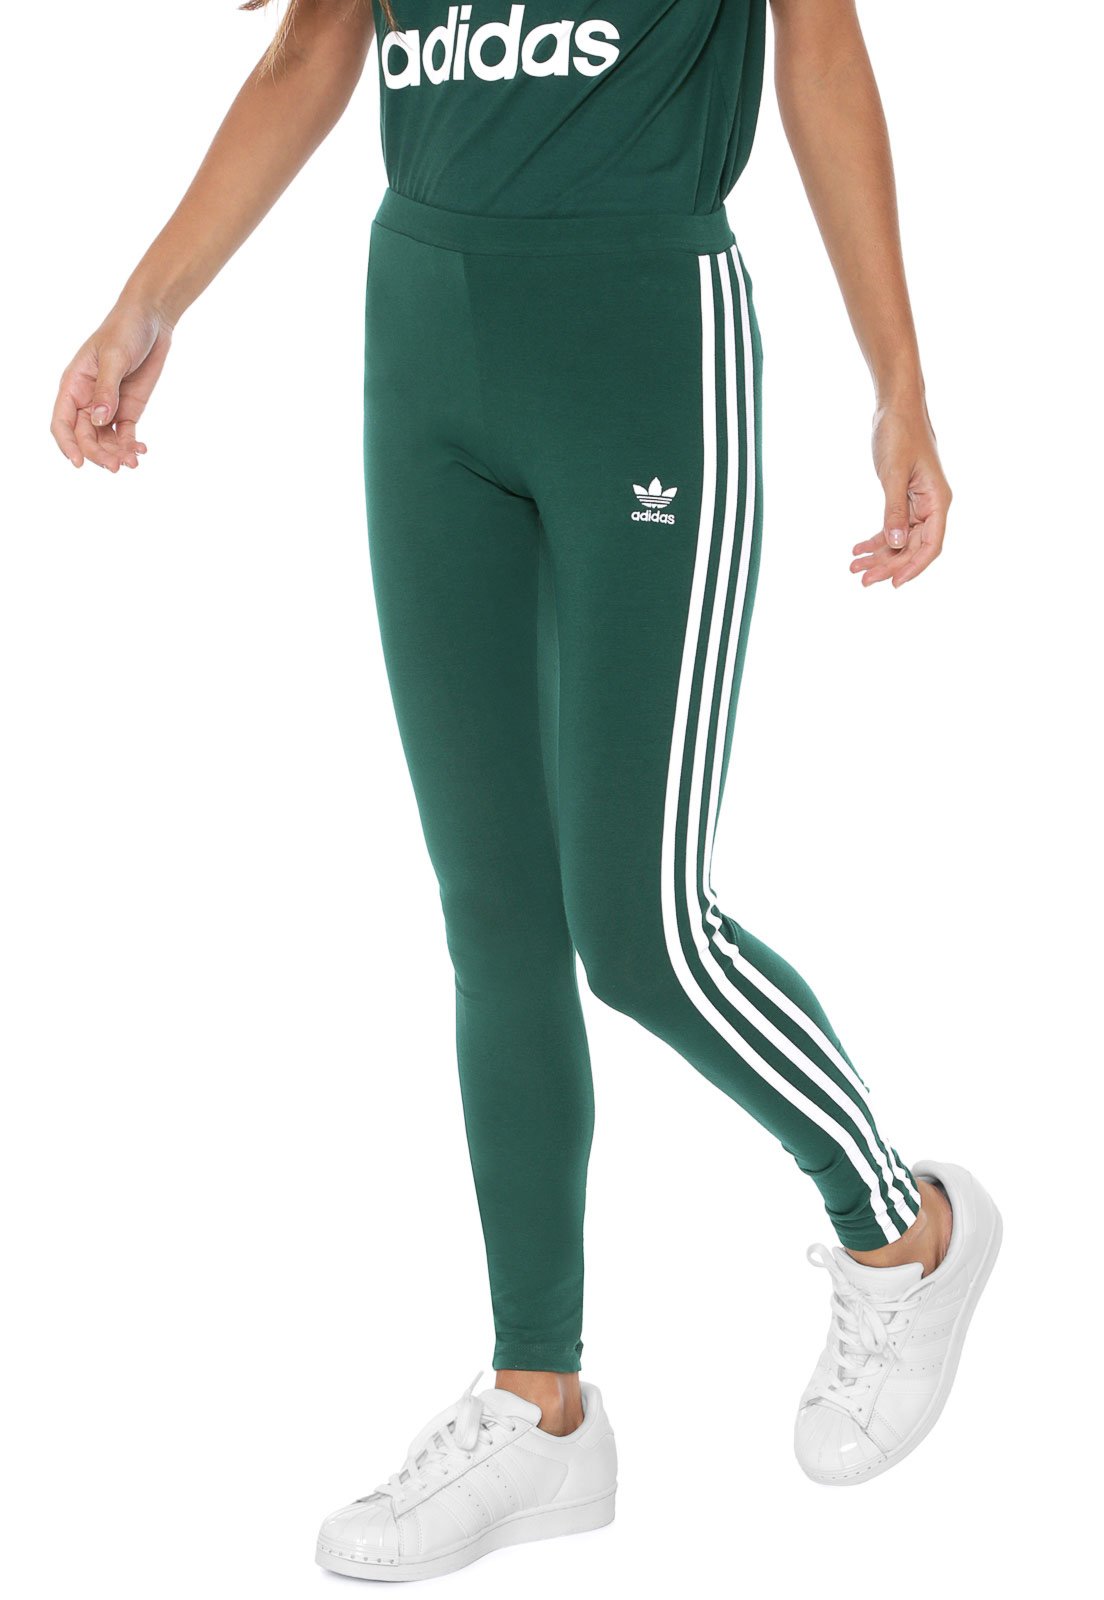 calça adidas feminina verde